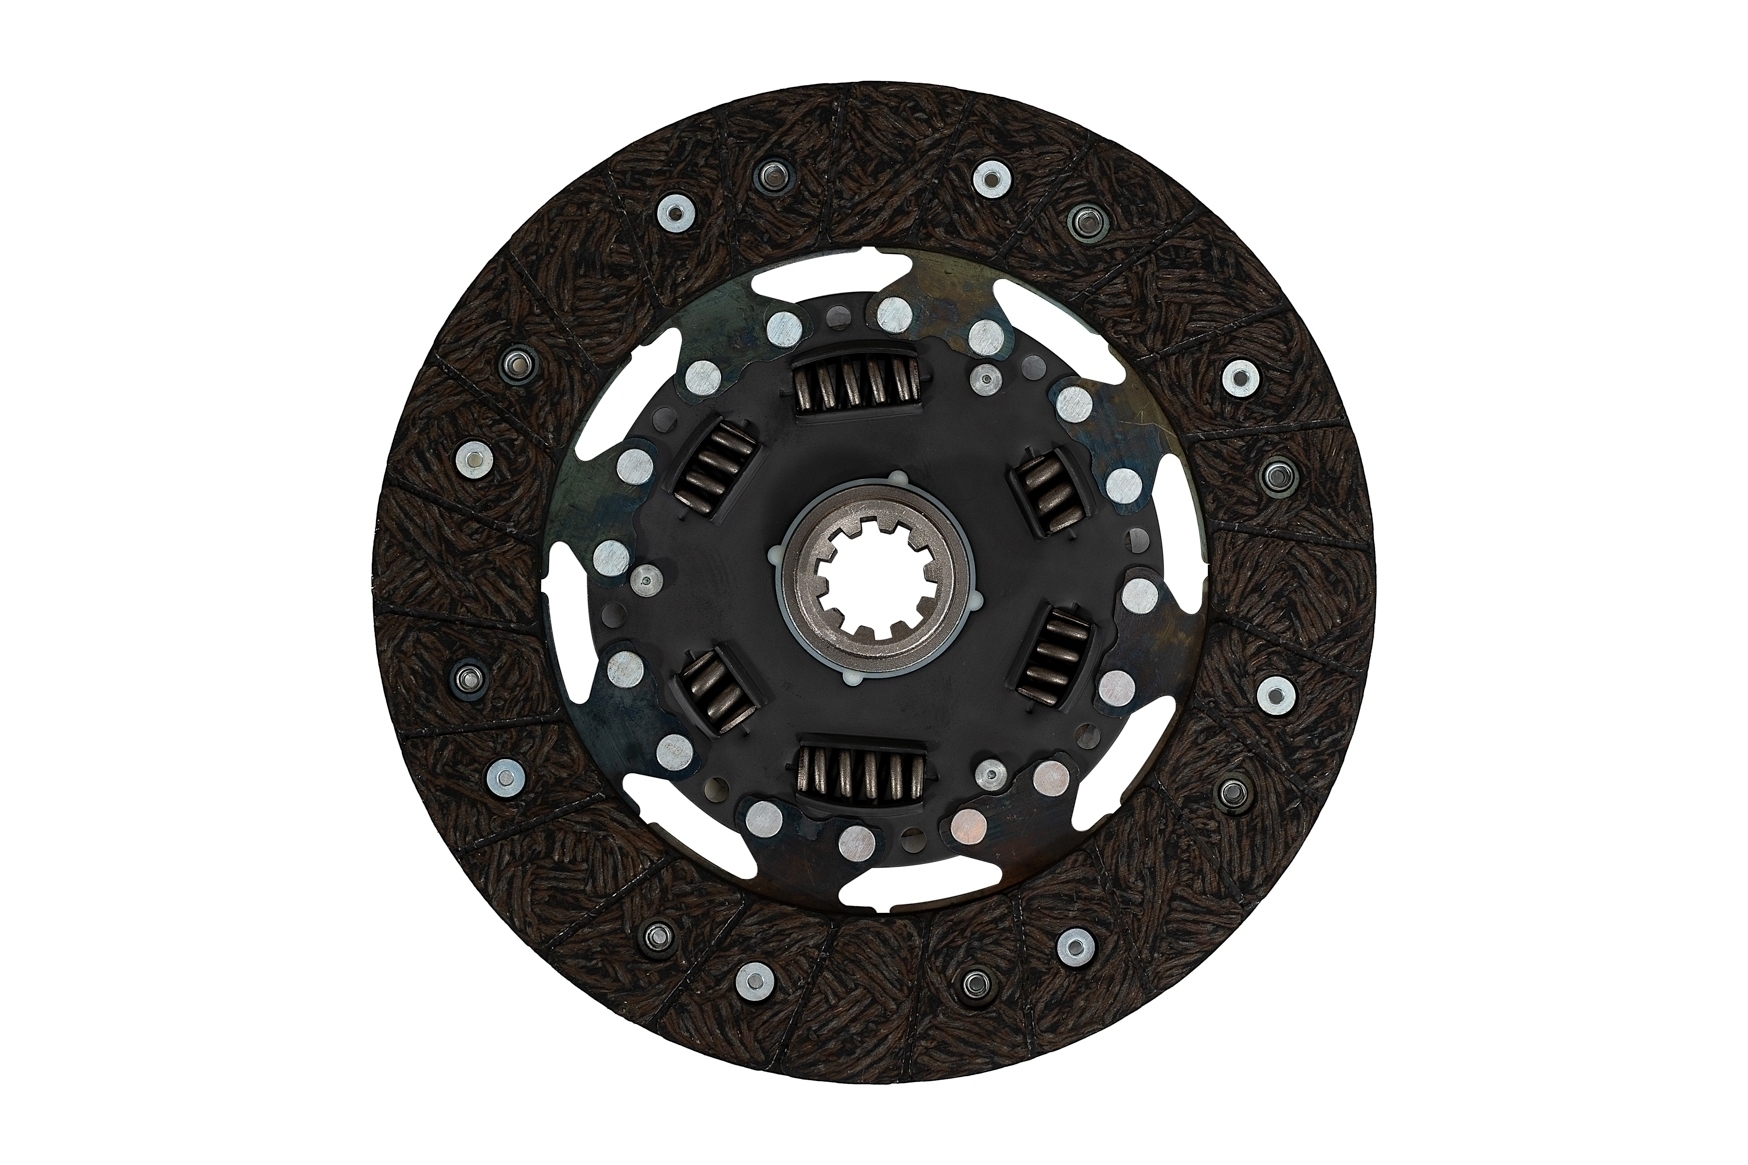 Комплект сцепления MetalPart (диск ведомый, диск нажимной) для автомобилей УАЗ с двигателем 409